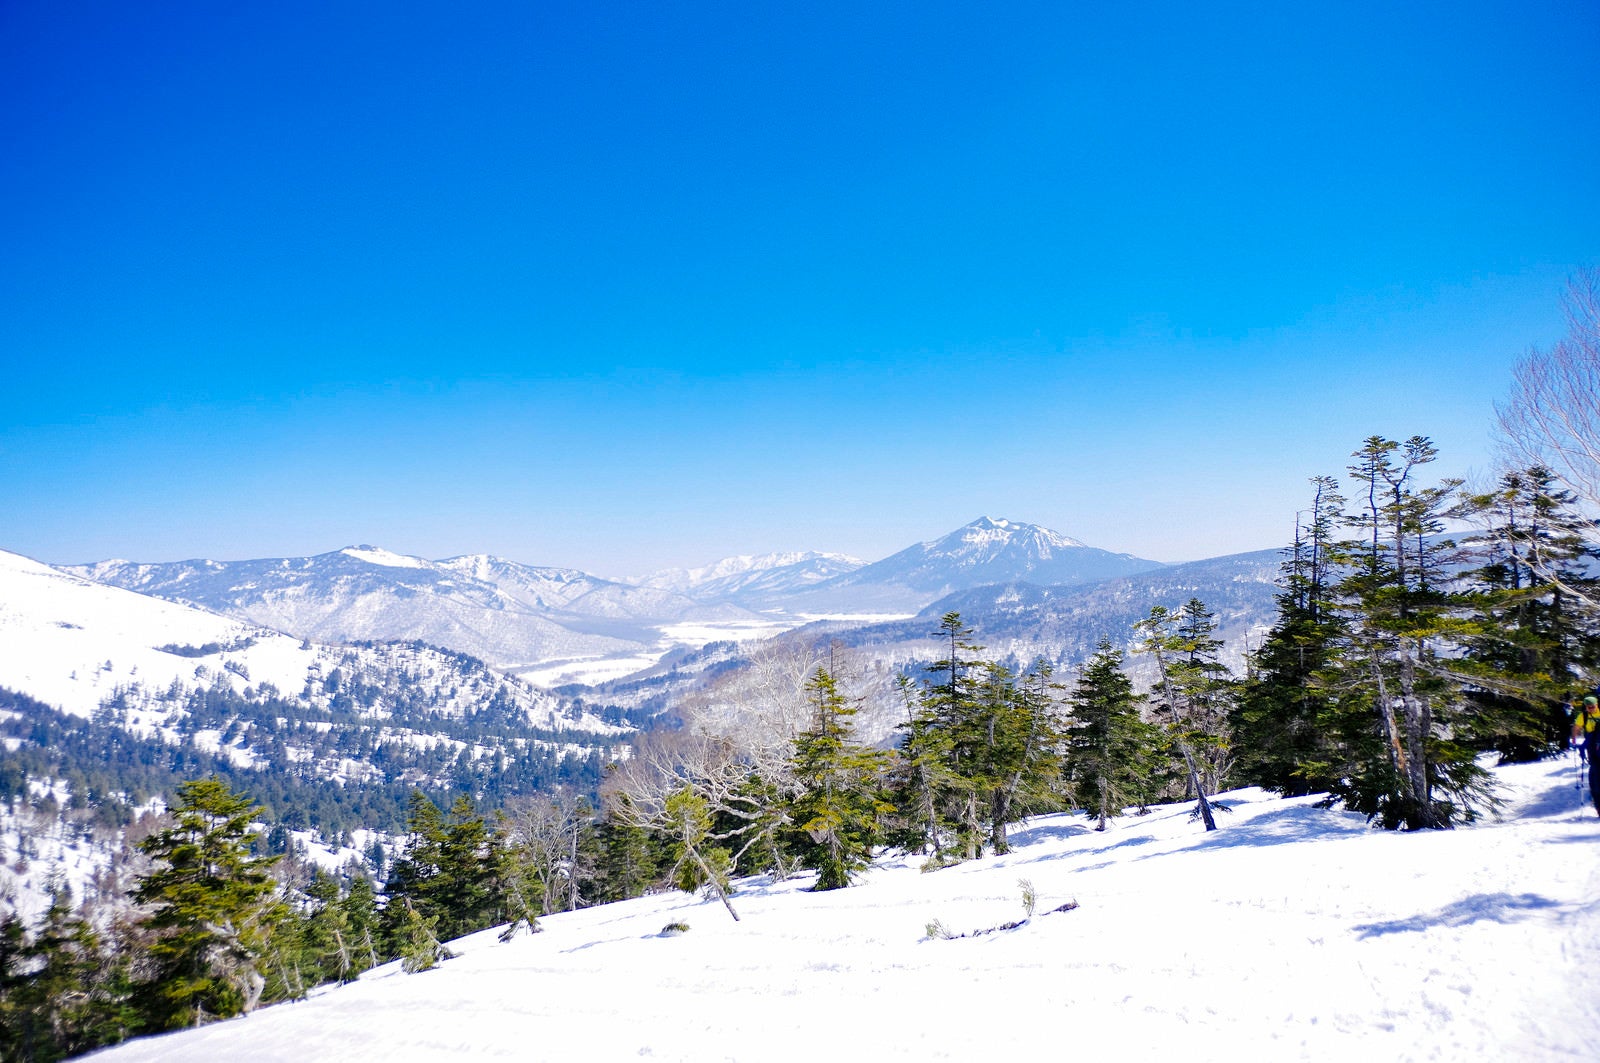 「GW近くだが雪に包まれる至仏山と尾瀬」の写真